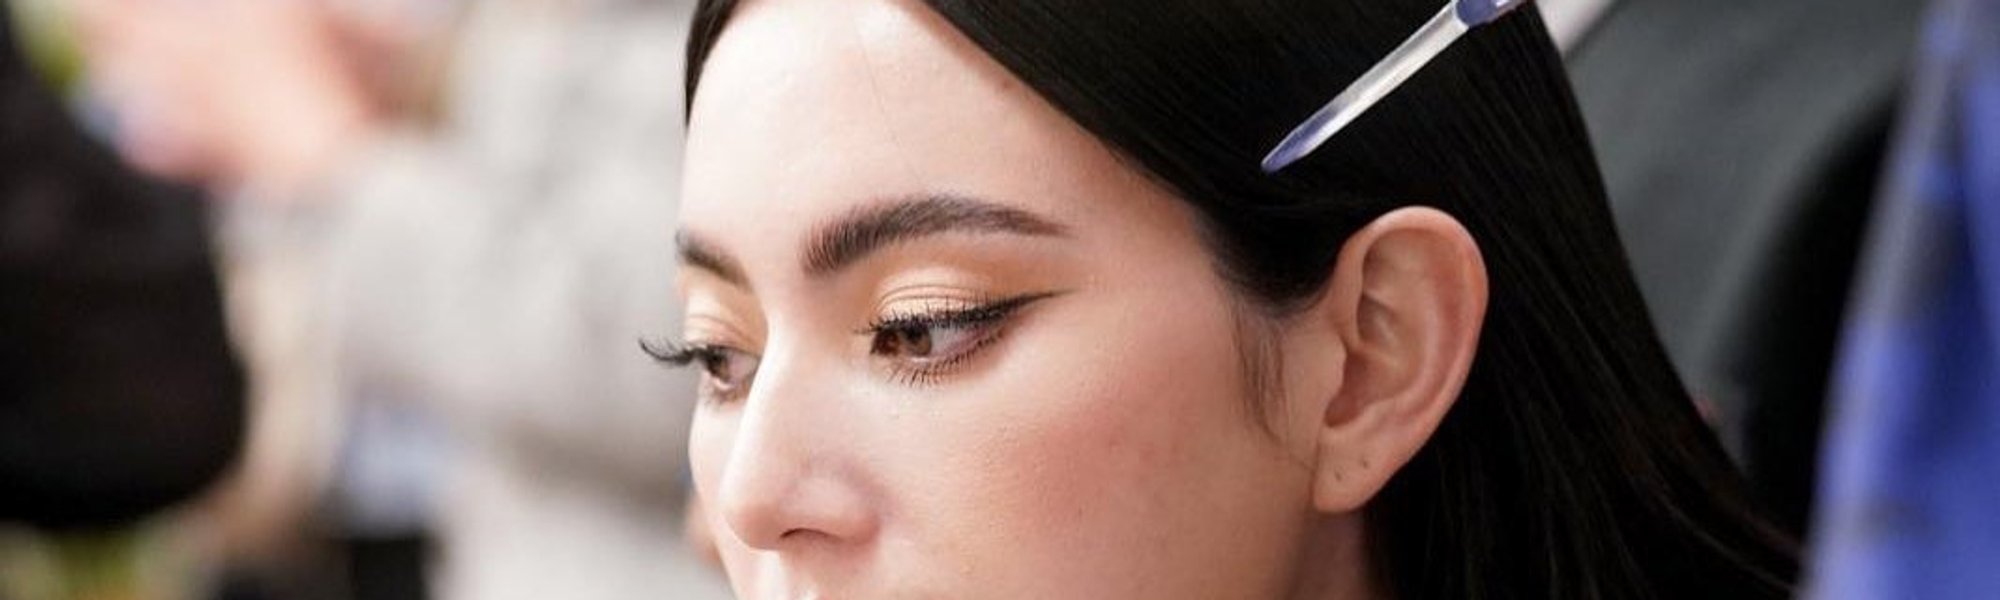 Cómo maquillarse paso a paso | L’Oréal Paris